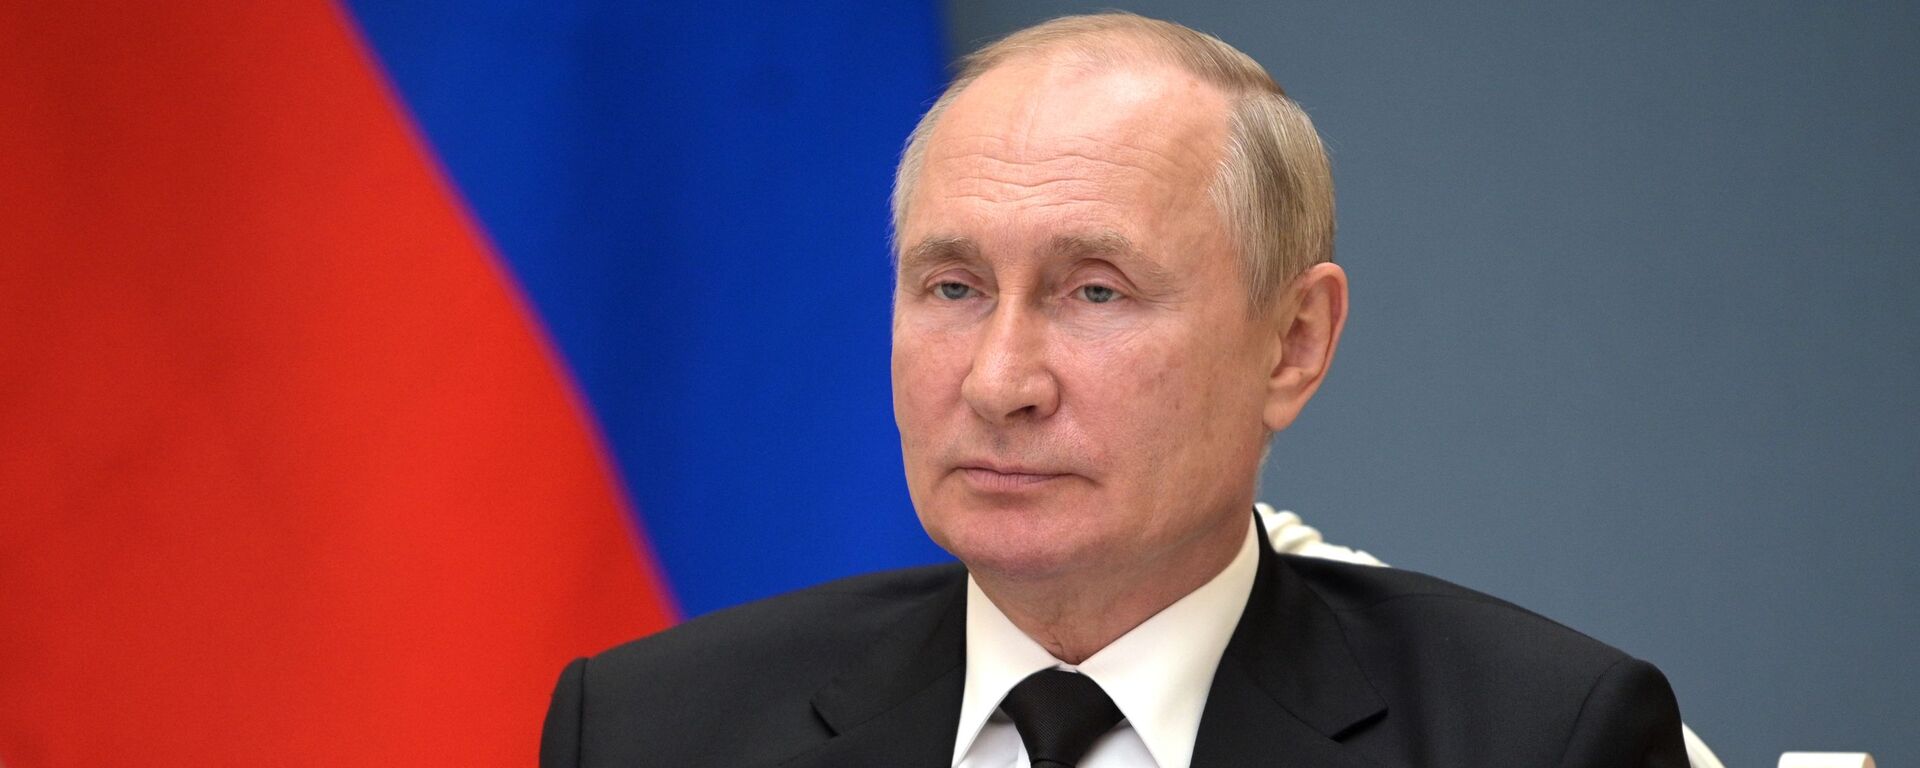 Tổng thống Nga Vladimir Putin tham dự Hội nghị thượng đỉnh BRICS lần thứ XIII (ngày 9 tháng 9 năm 2021) - Sputnik Việt Nam, 1920, 26.12.2021